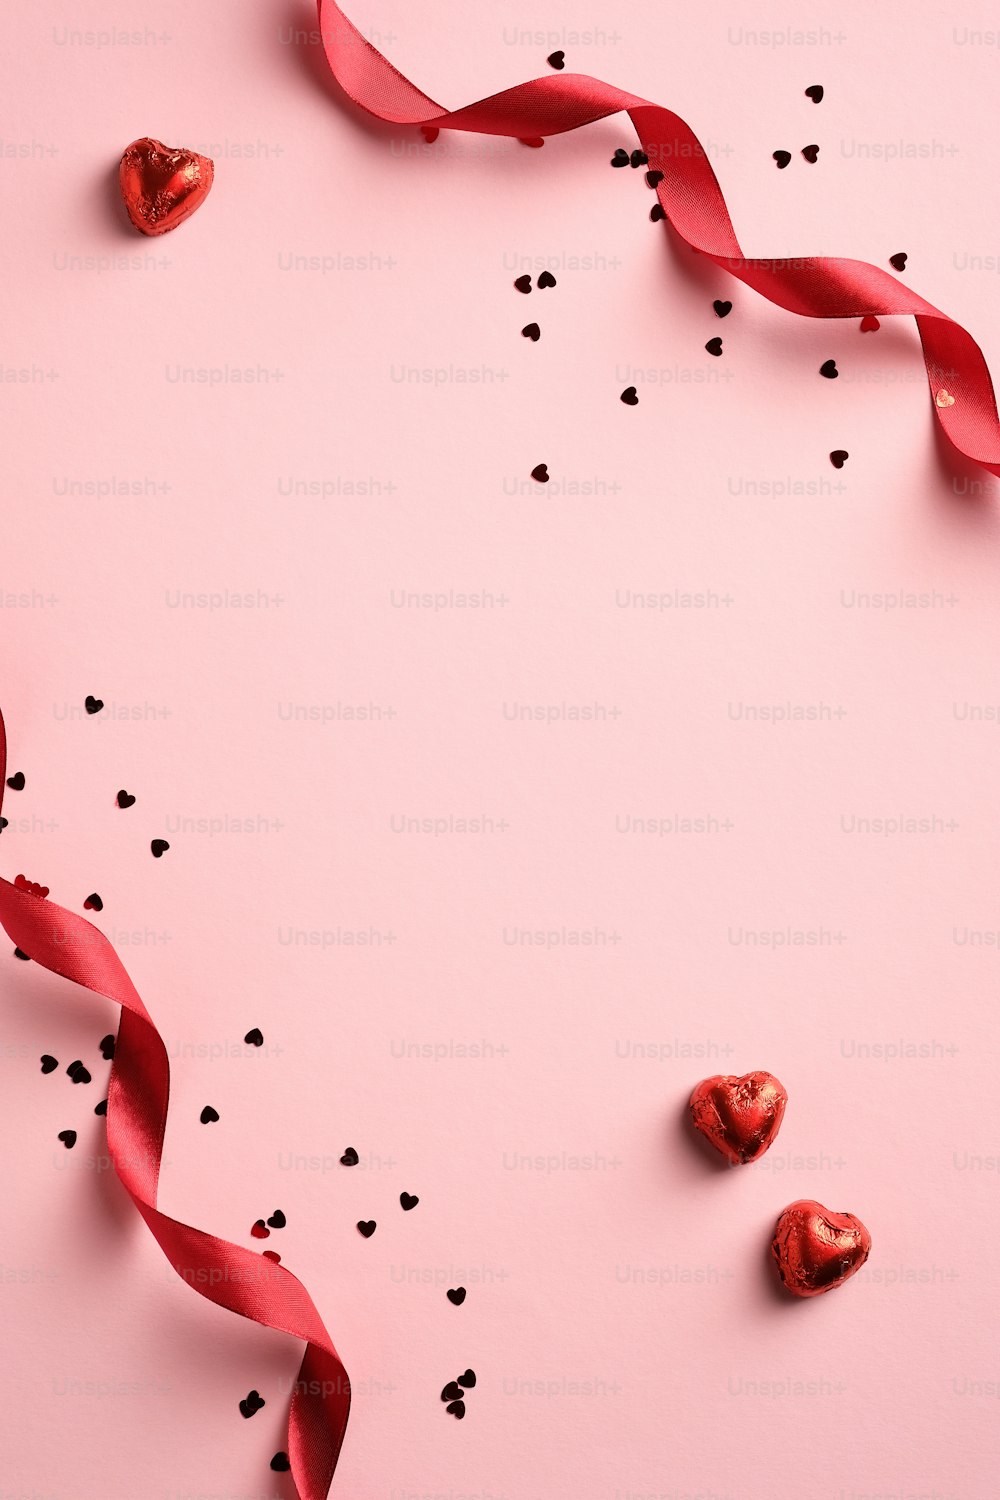 Fundo elegante do Dia dos Namorados com fita vermelha, confete, doces em forma de coração no fundo rosa. Estilo minimalista. Flat lay.